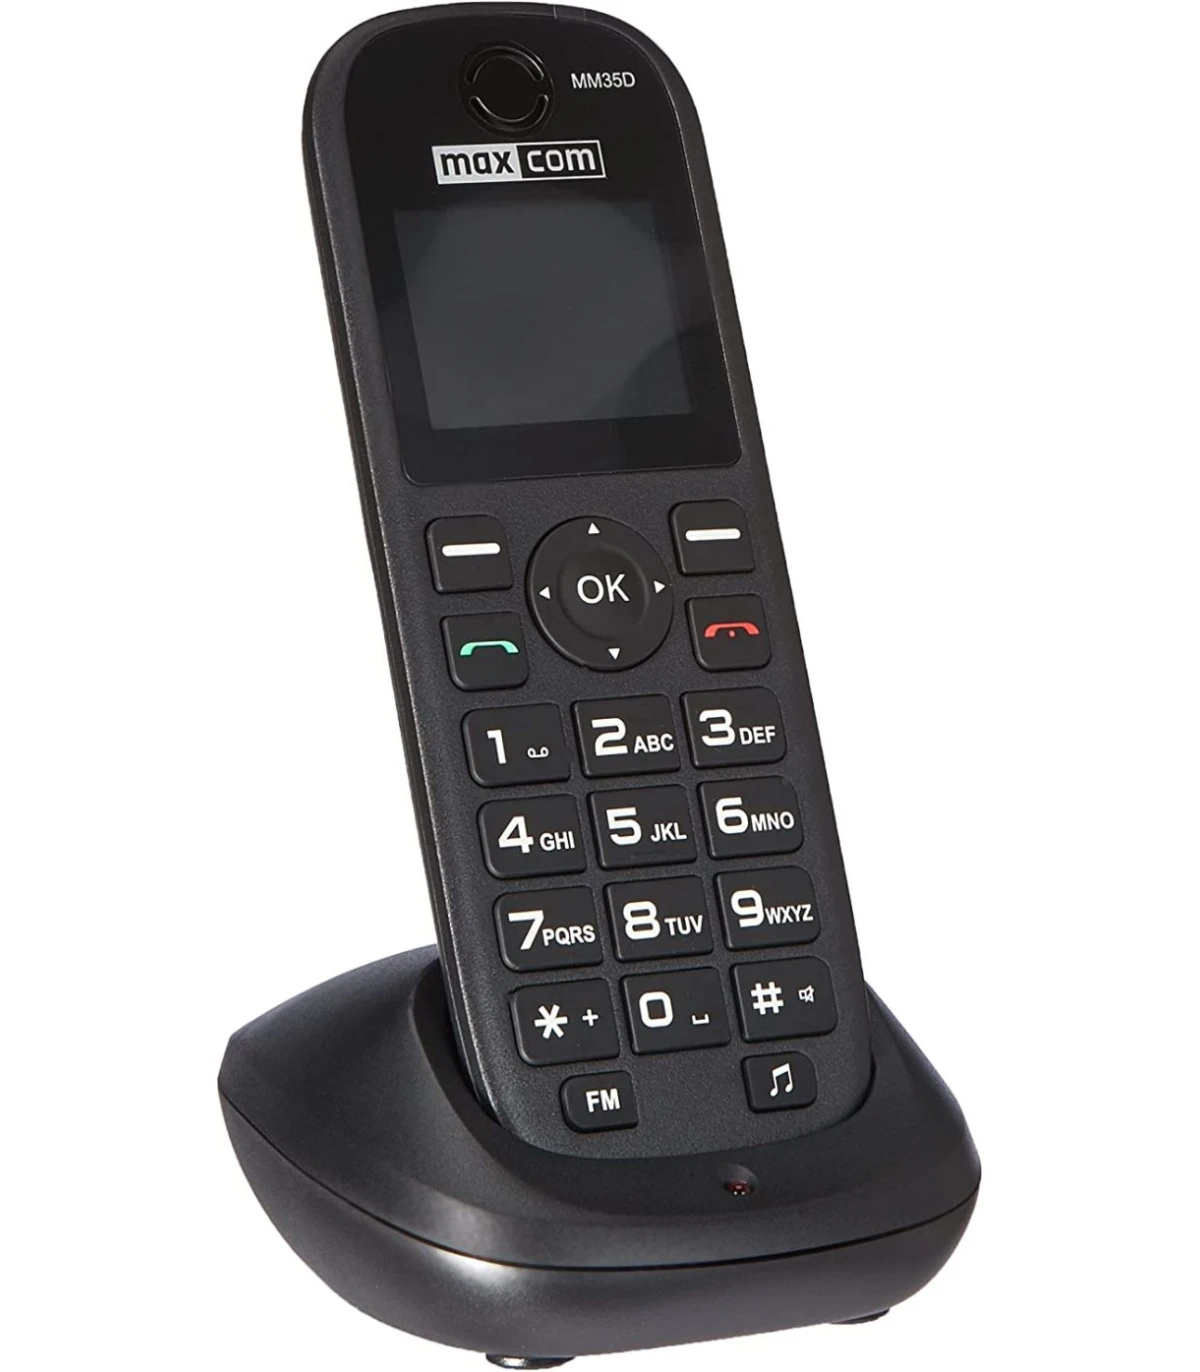 MM35D Teléfono Maxcom inalámbrico con SIM - Canarias